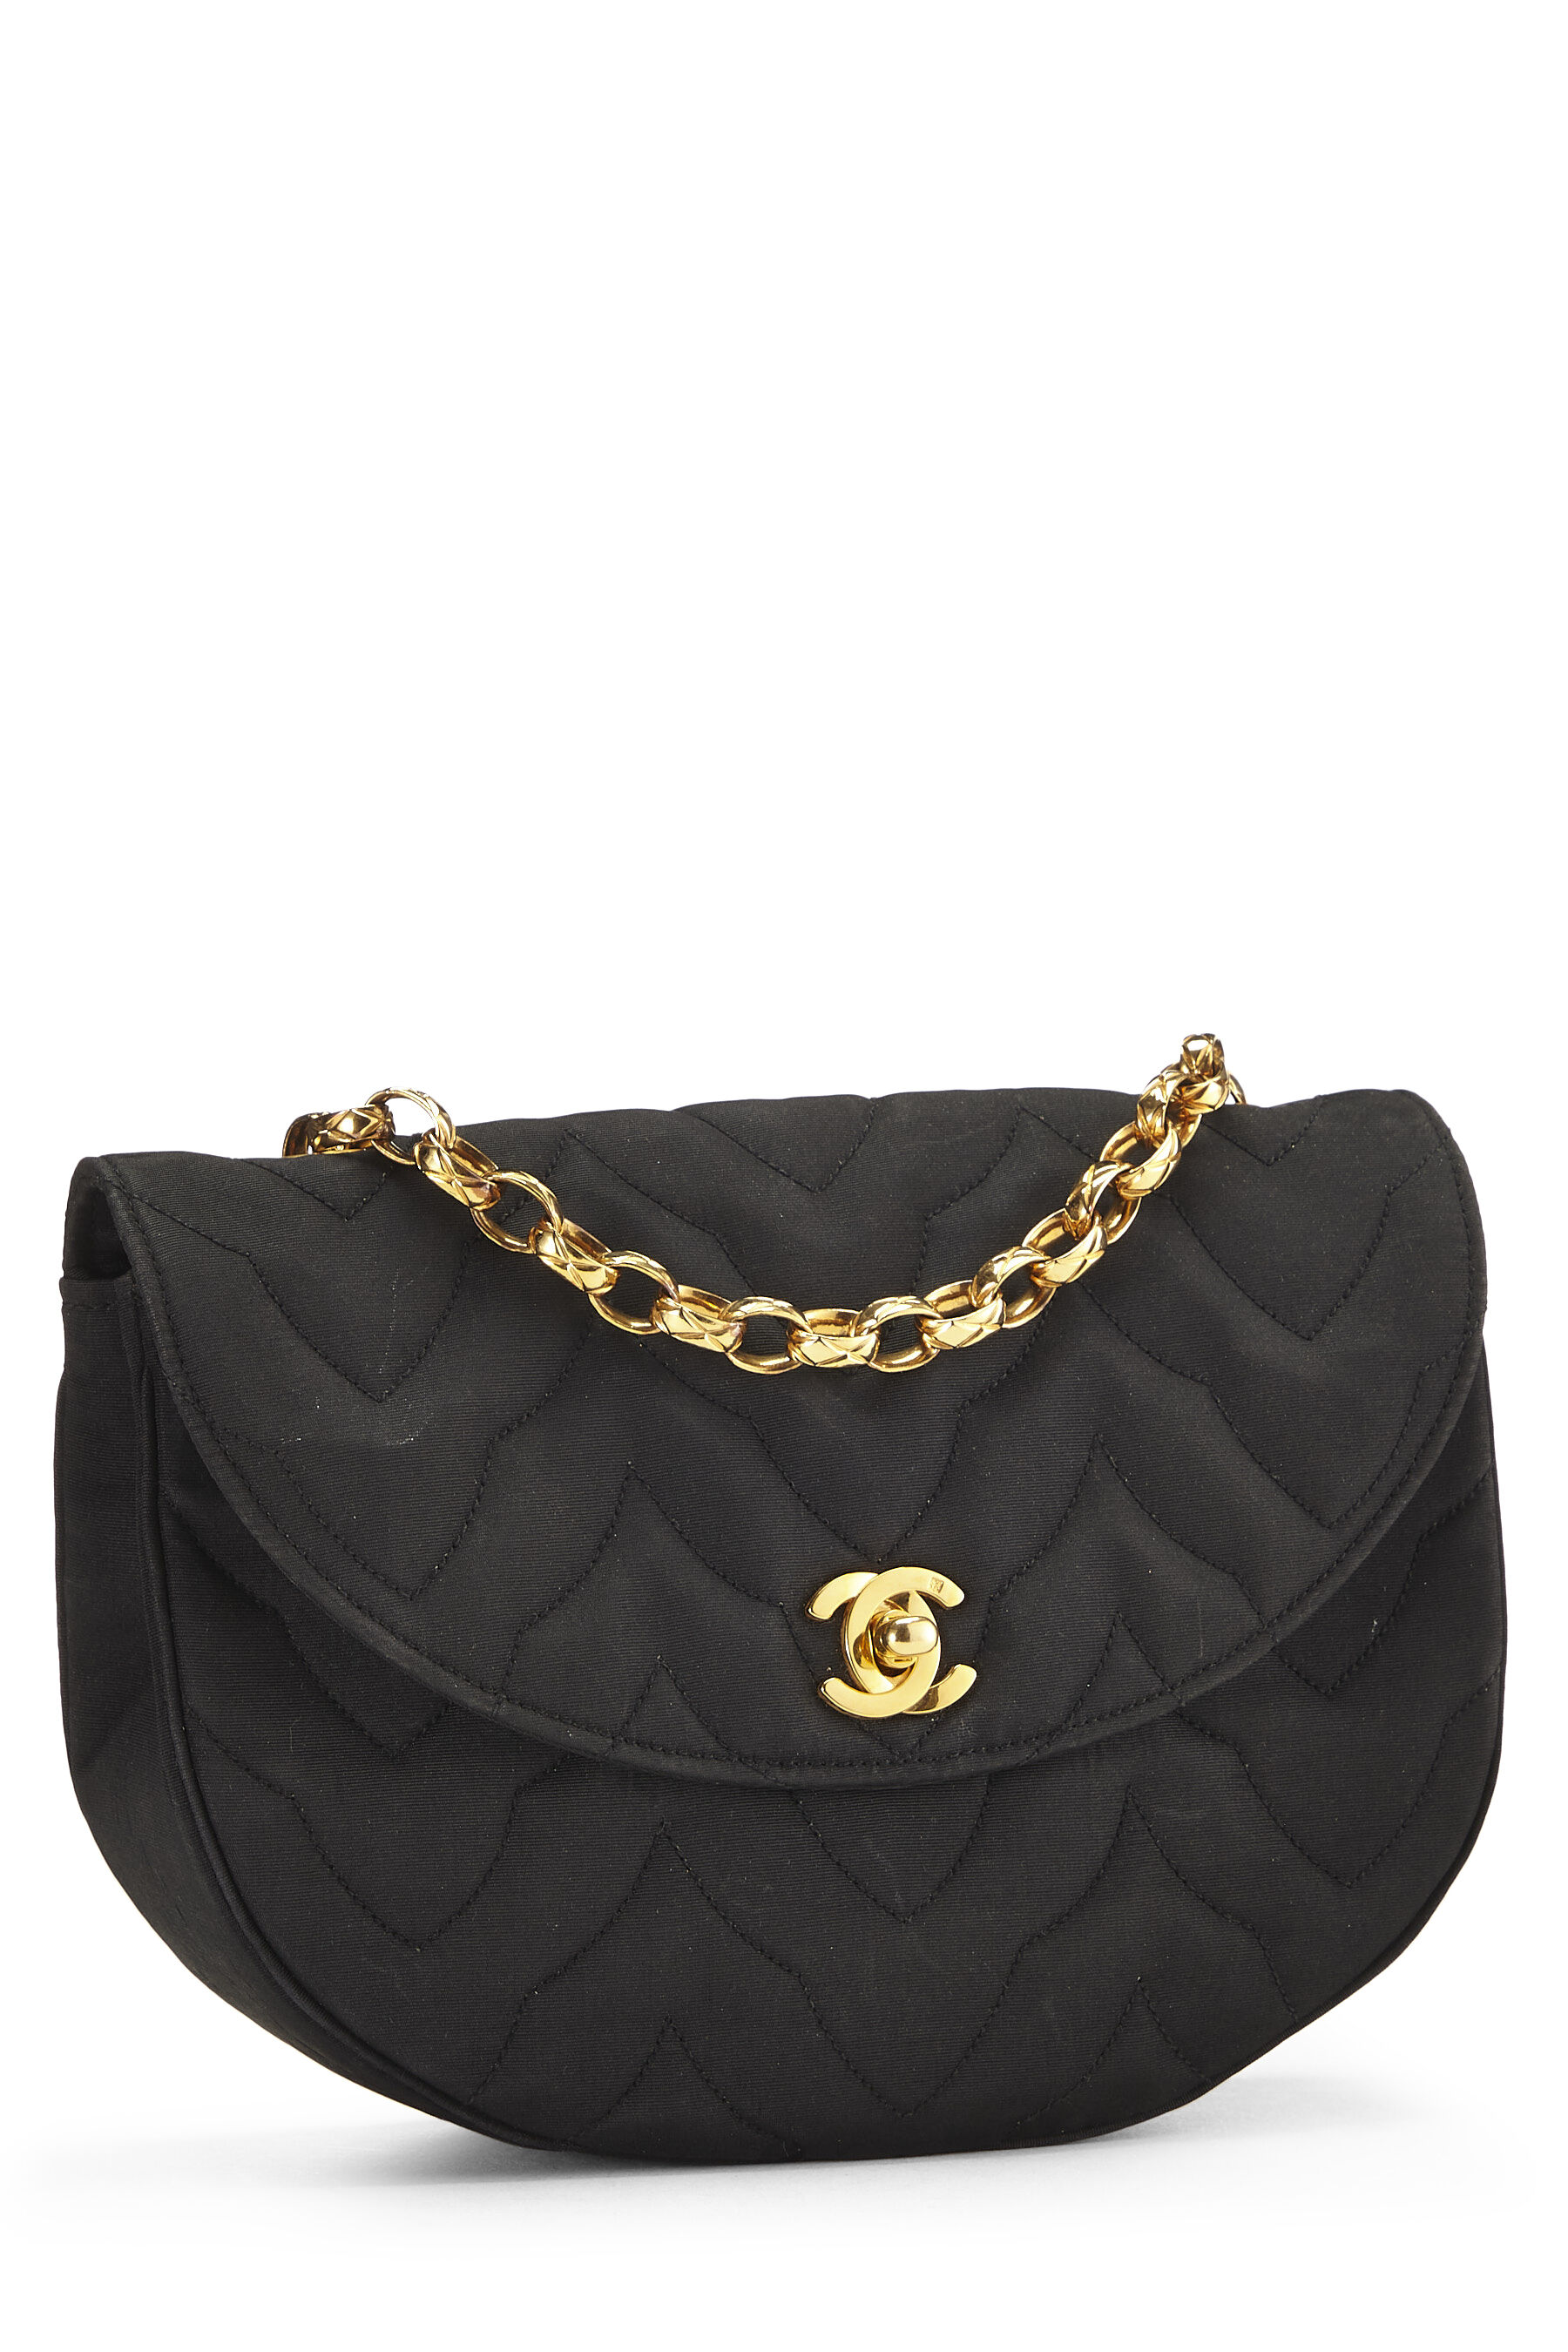 Chanel - Black Satin Shoulder Bag